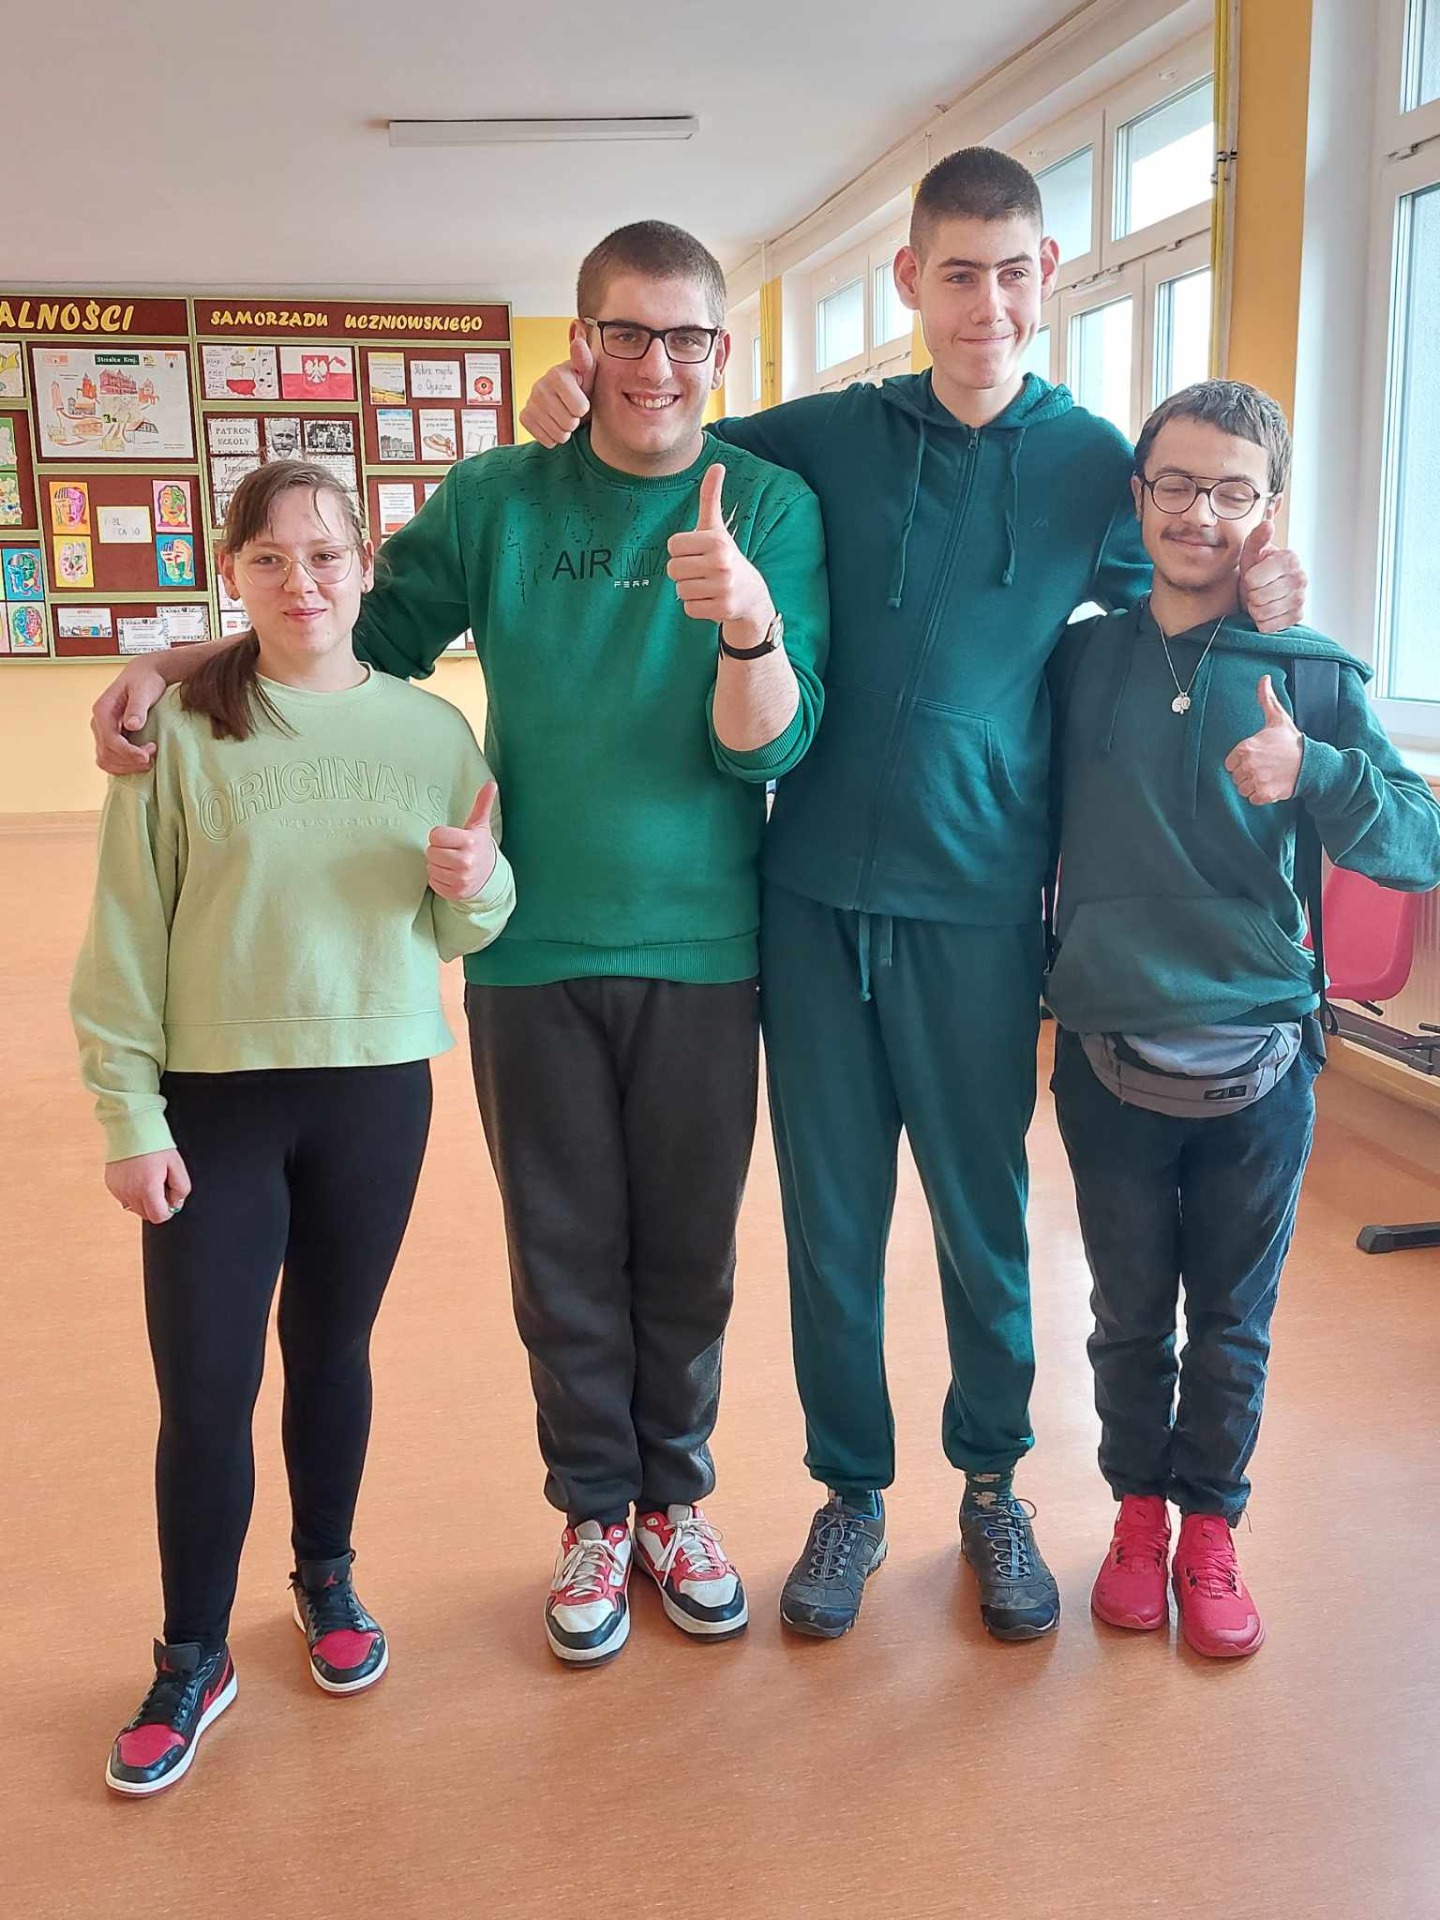 4 uczniów stoi na szkolnym korytarzu, są ubrani na zielono